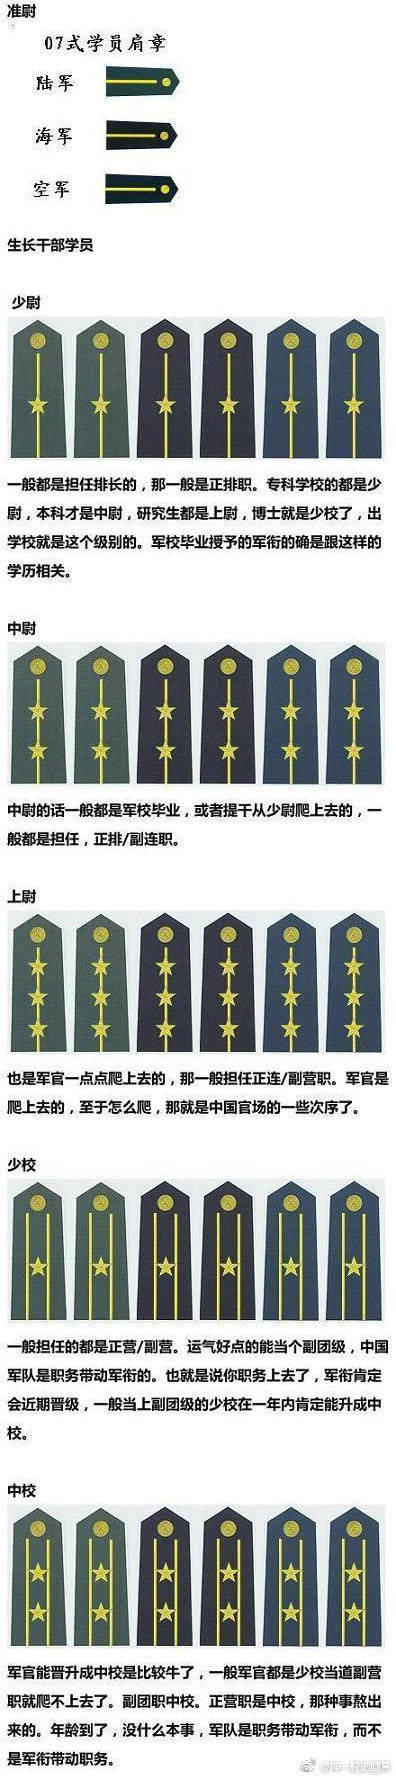 中国的军衔和军官资历,看完你就懂那些星星和杠杠了